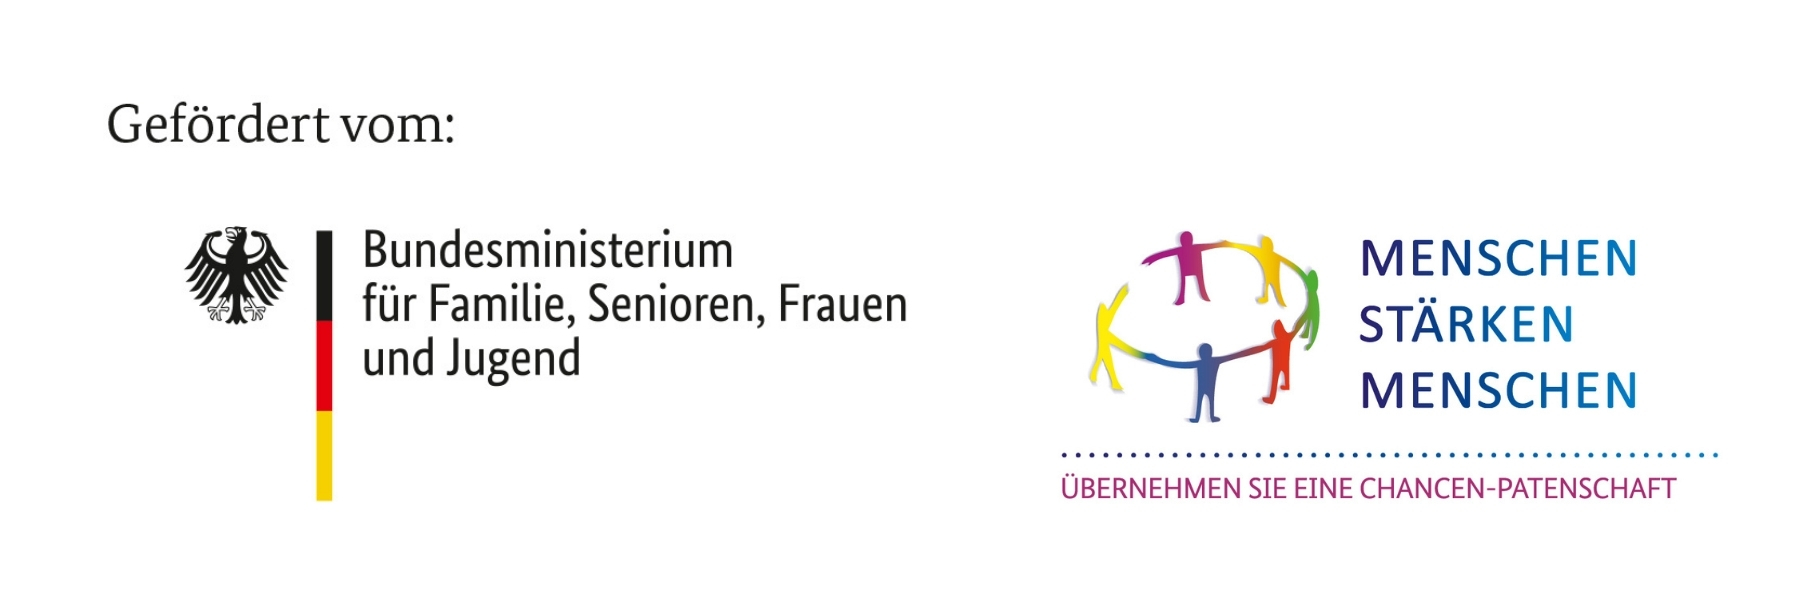 Logos: Gefördert vom BMFSFJ im Rahmen des Bundesprogramms "Menschen stärken Menschen"